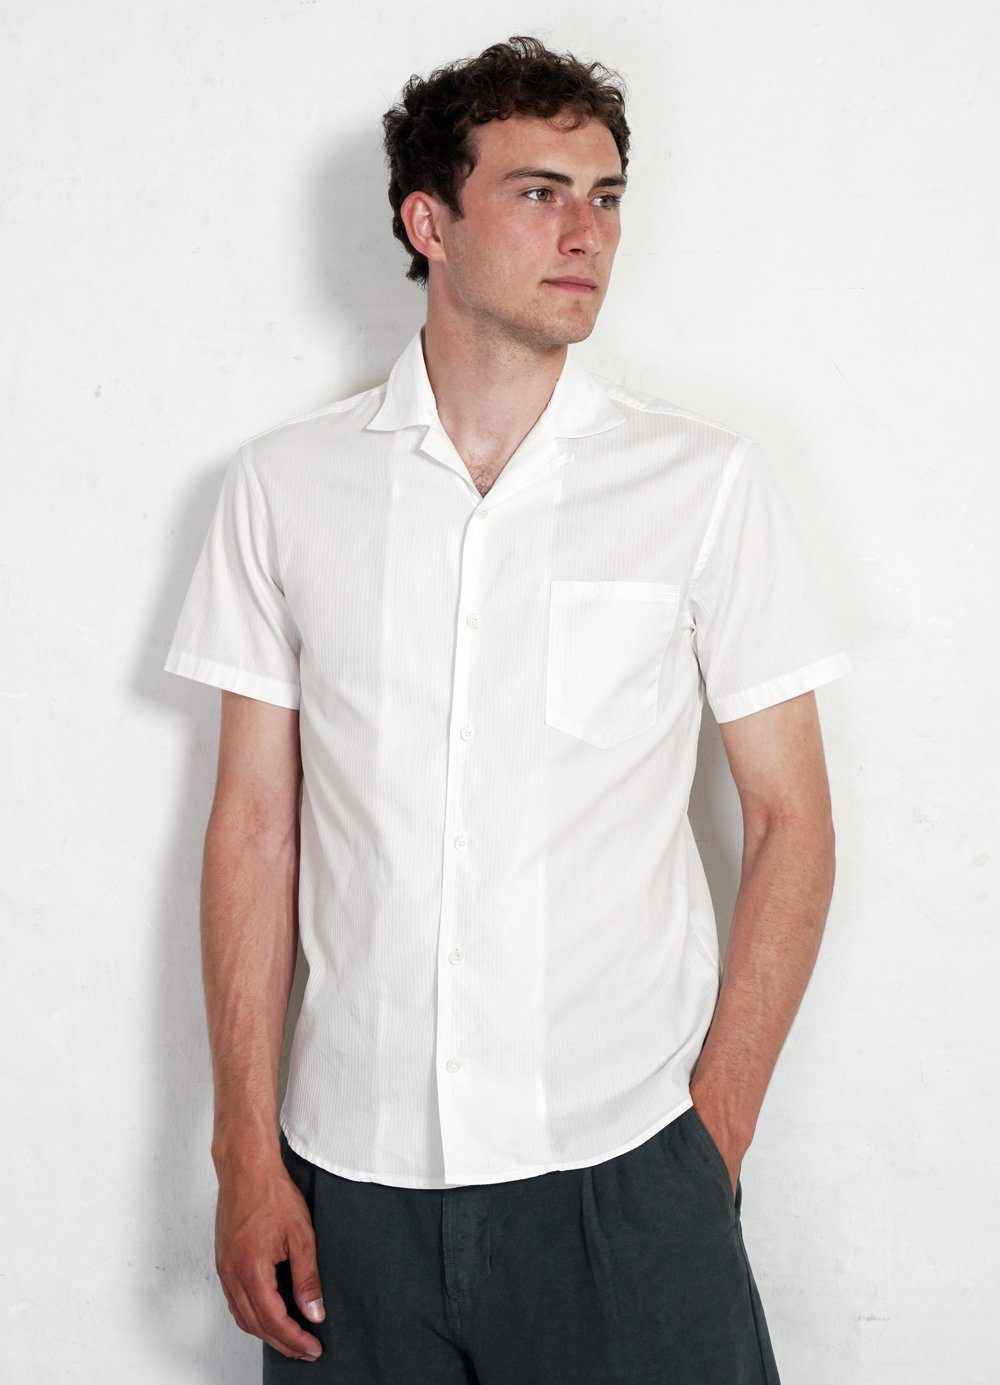 HANSEN GARMENTS - JONNY | Short Sleeve Shirt | White White - HANSEN Garments